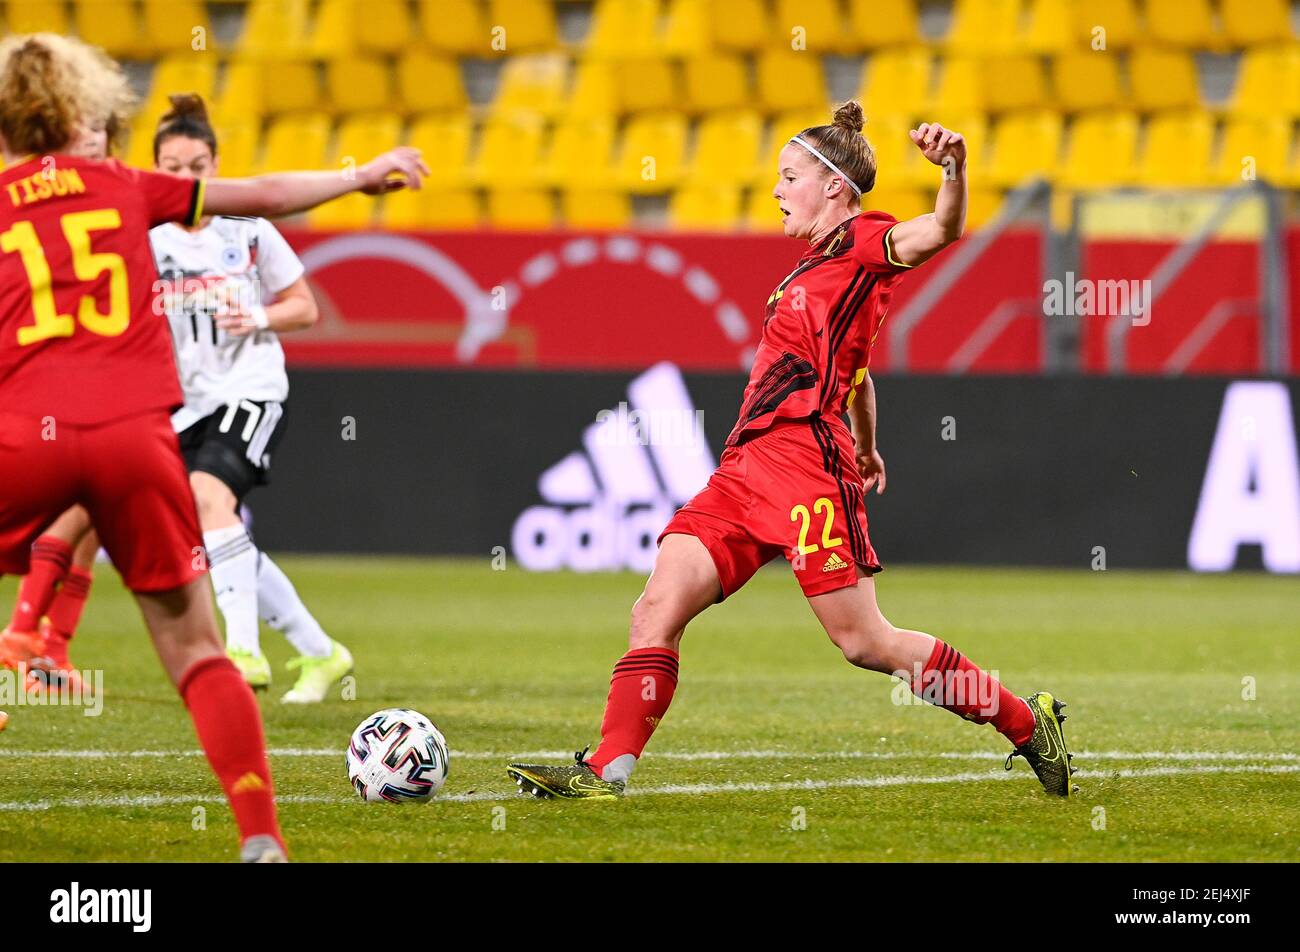 La Belgique Laura Deloose lutte pour le ballon lors d'un match de football amical entre l'équipe nationale belge les flammes rouges et l'Allemagne, dimanche 21 février Banque D'Images